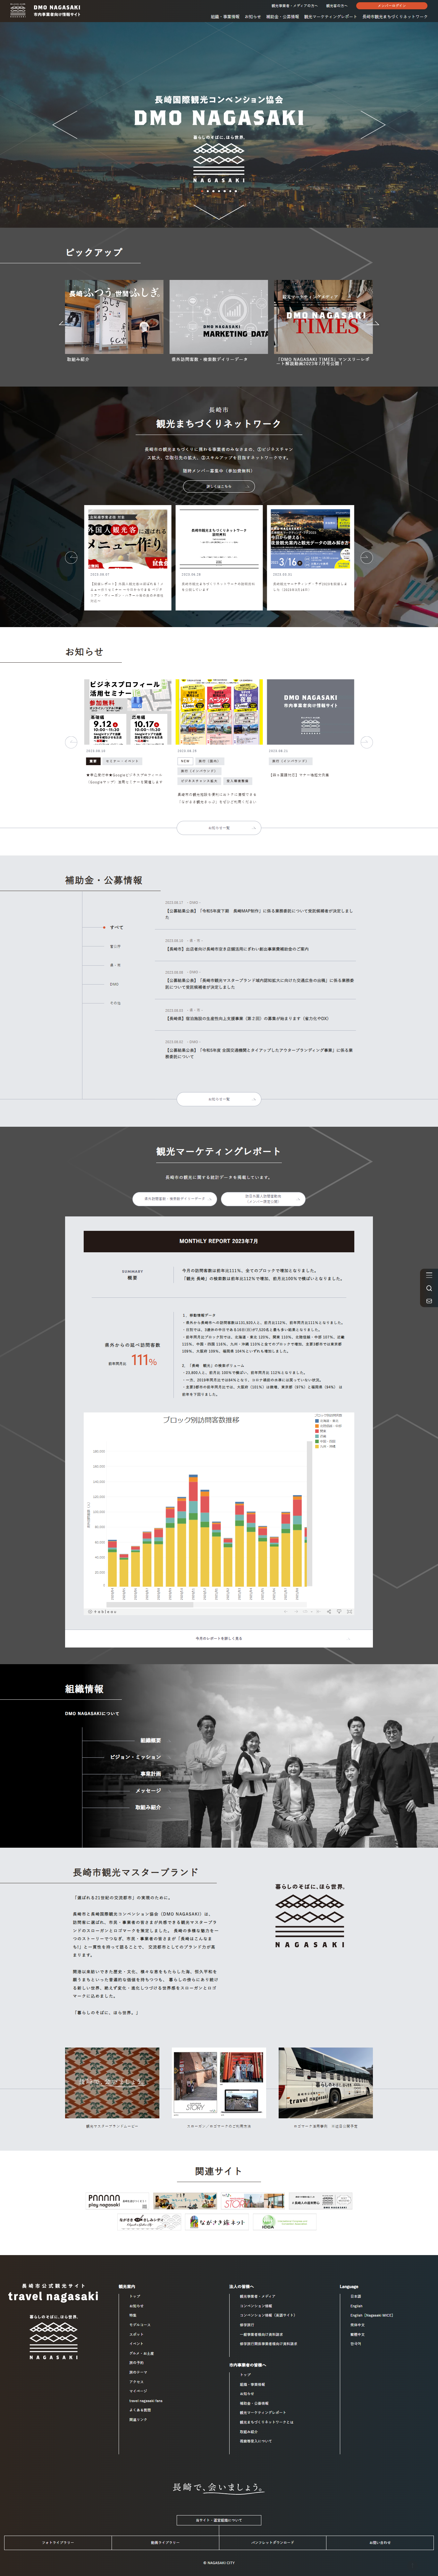 「DMO NAGASAKI市内事業者向け情報サイト」が完成しました-2